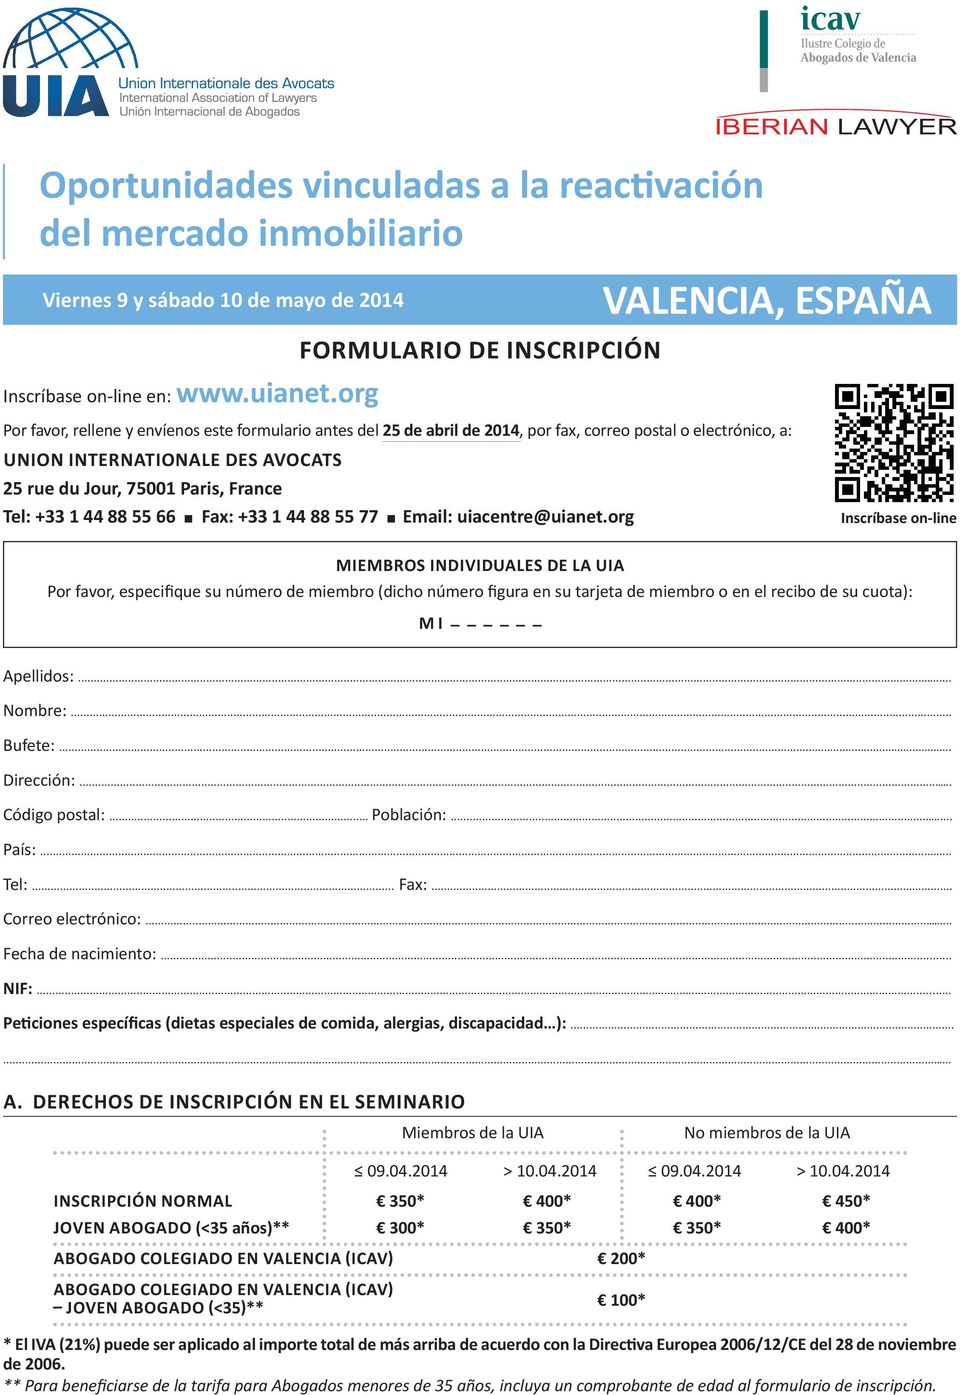 favor, rellene y envíenos este formulario antes del 25 de abril de 2014, por fax, correo postal o electrónico, a: UNION INTERNaTIONaLE DEs avocats 25 rue du Jour, 75001 paris, France Tel: +33 1 44 88